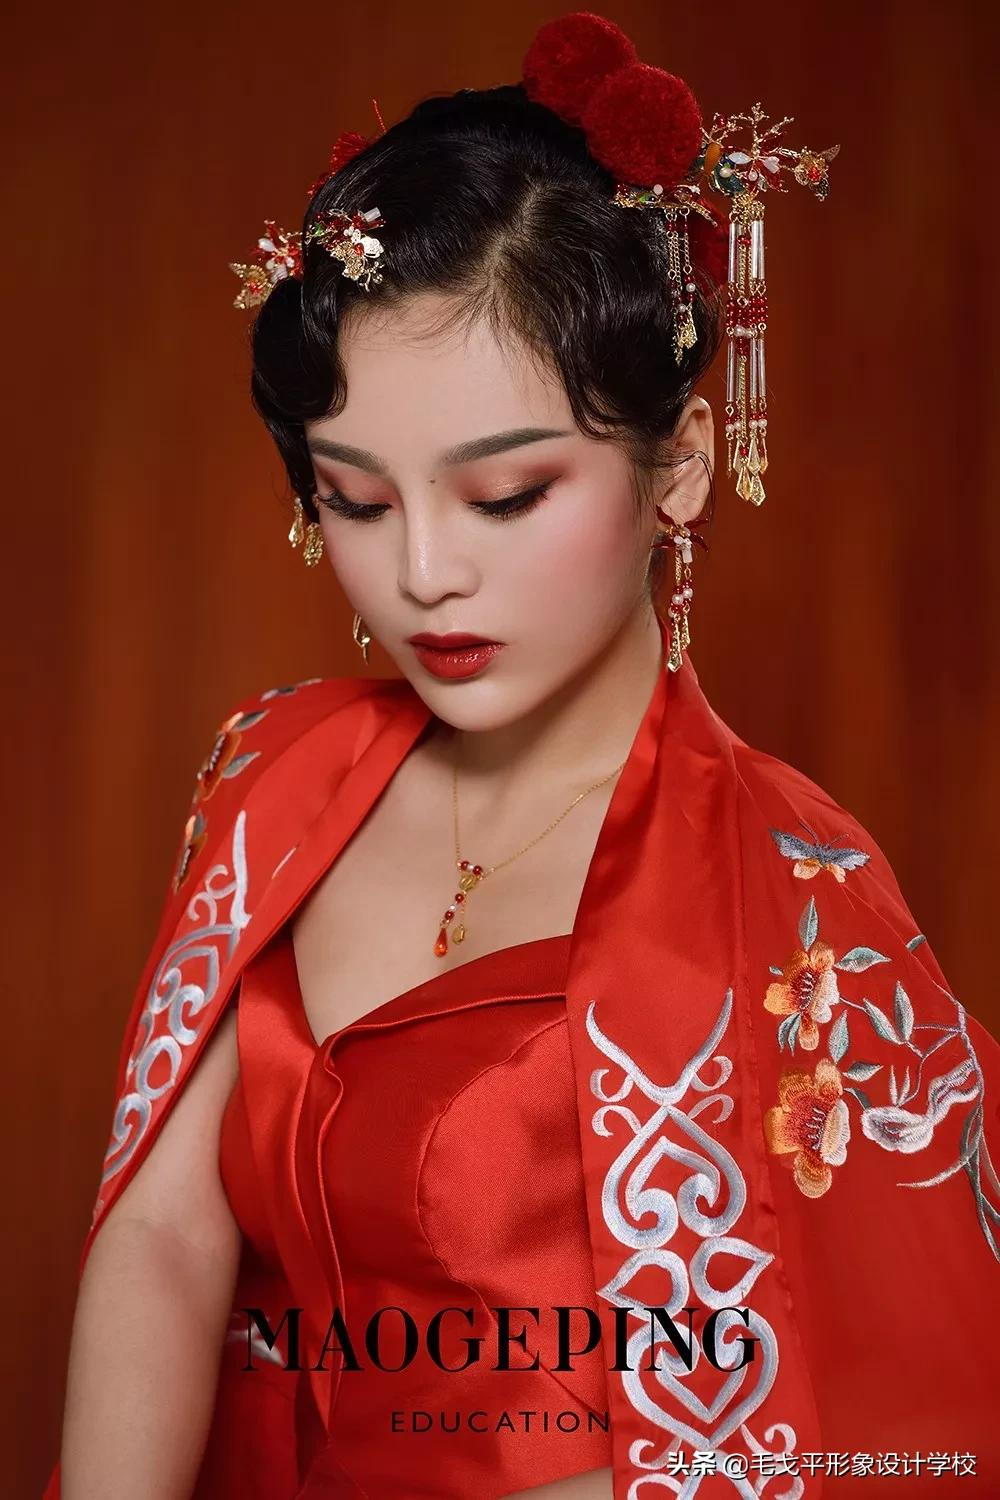 中国女性独有的韵美气质~▼轻复古哑光妆容搭配温婉简约的中式发型